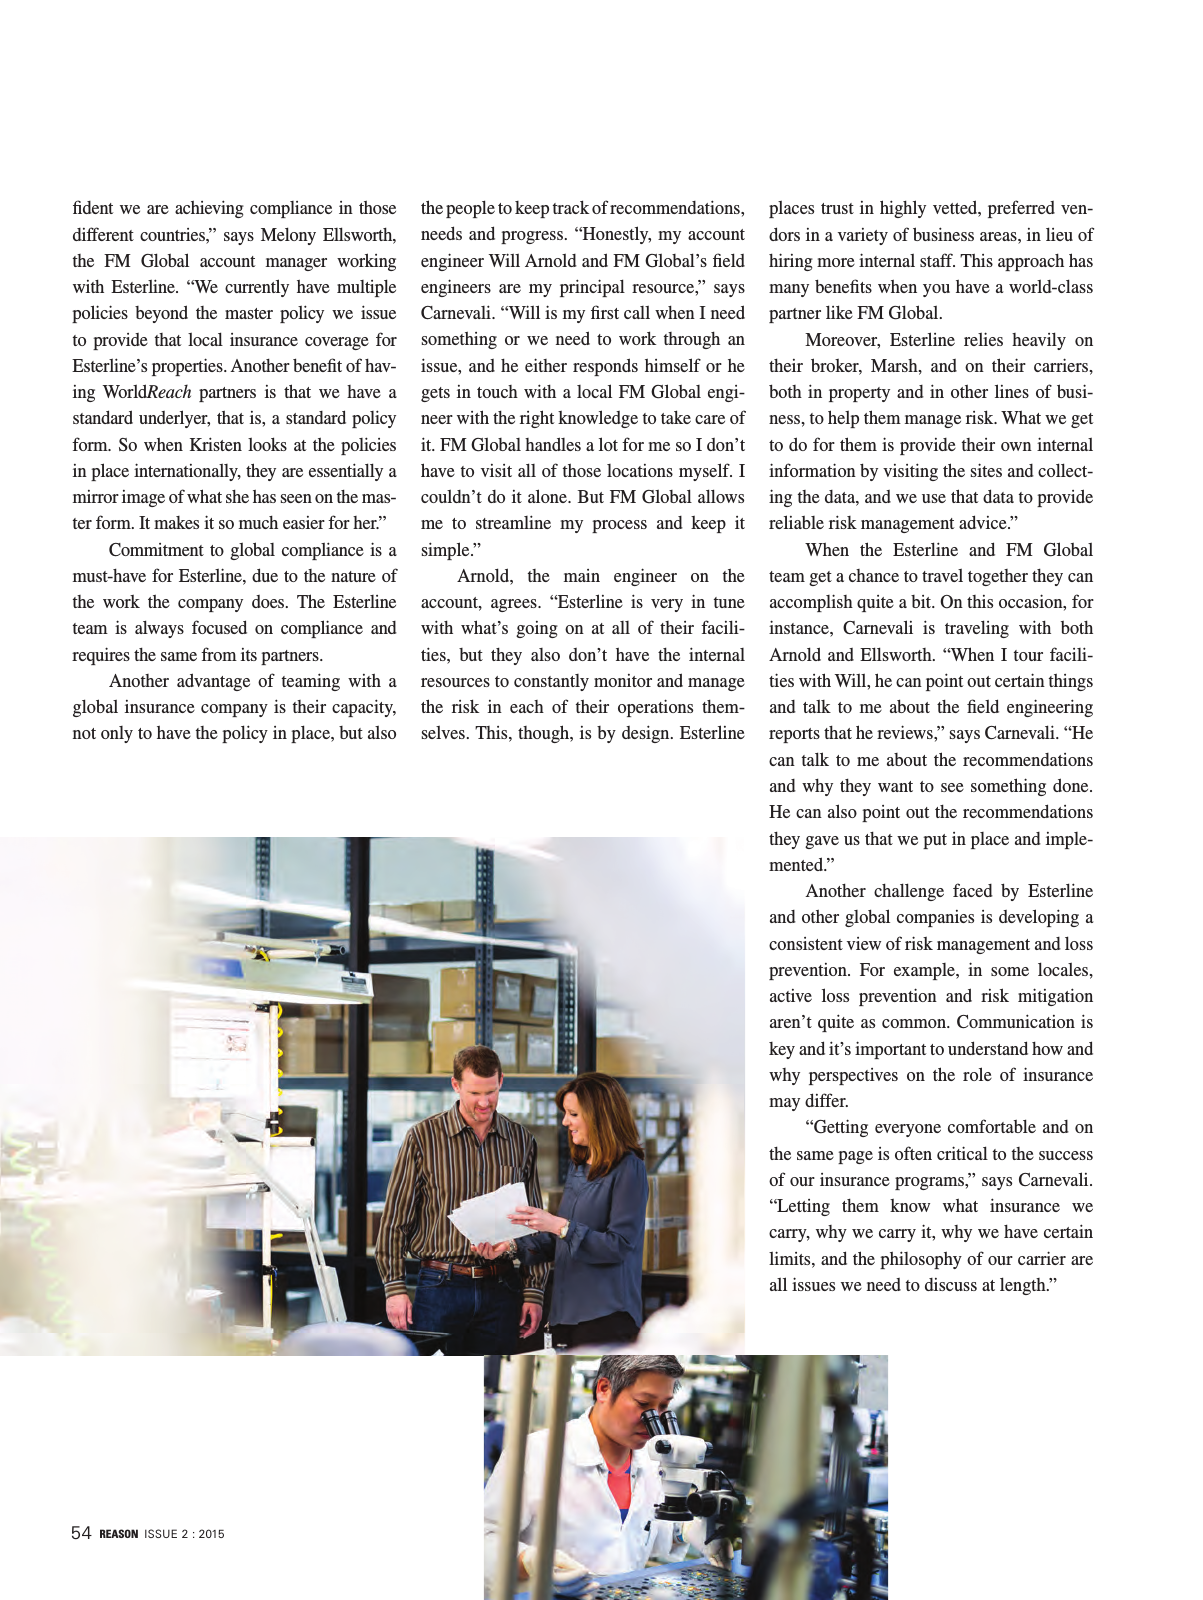 Vorschau Reason Magazine Issue 2 2015 Seite 54